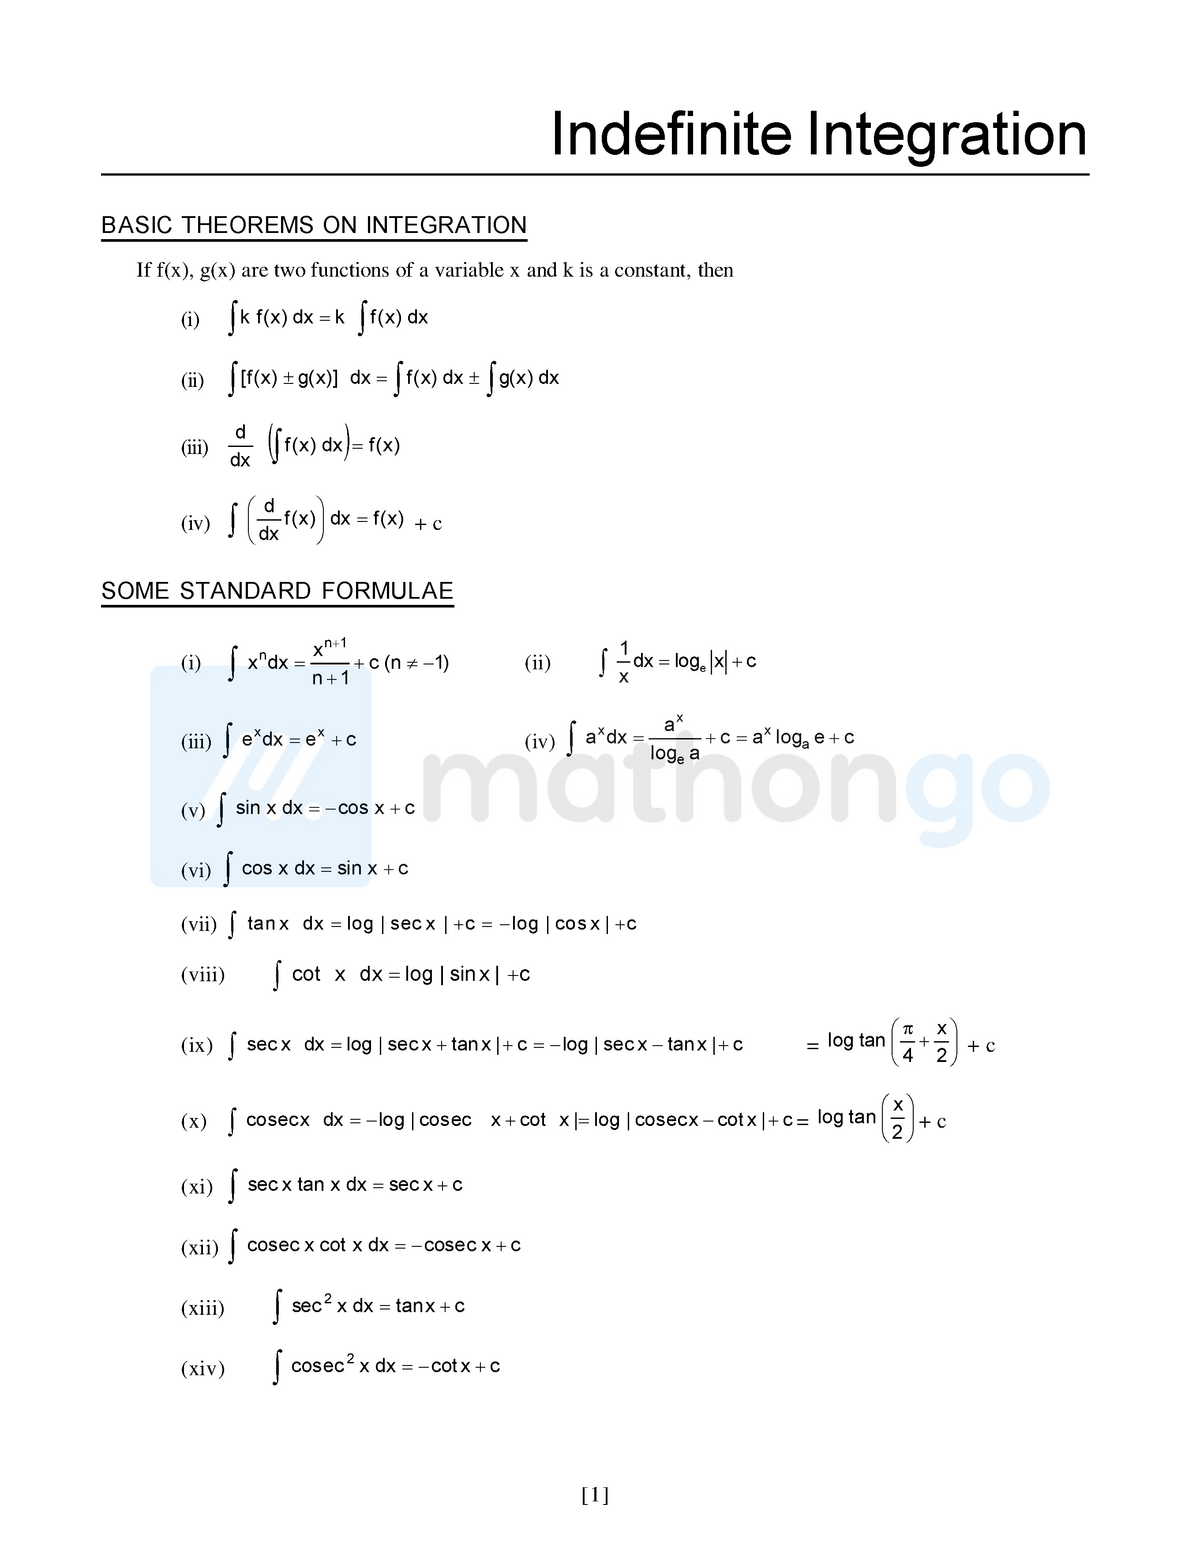 Indefinite Integration Formula Sheet For Summary Indefinite Integration Basic Theorems On 4688